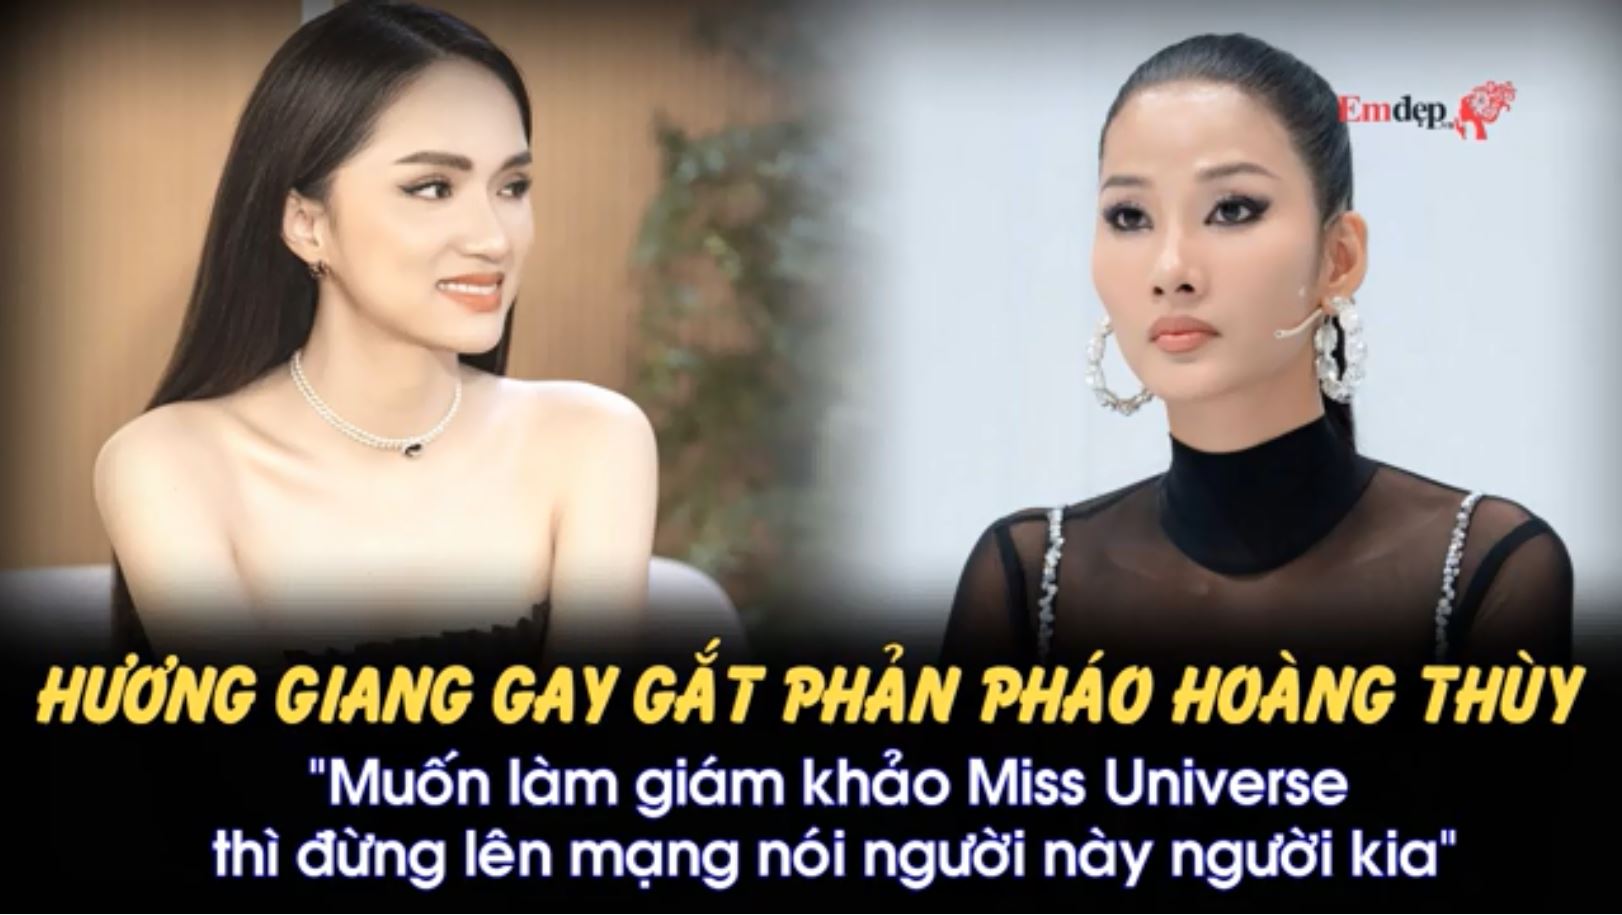 Hương Giang gay gắt phản pháo Hoàng Thùy tại Miss Universe